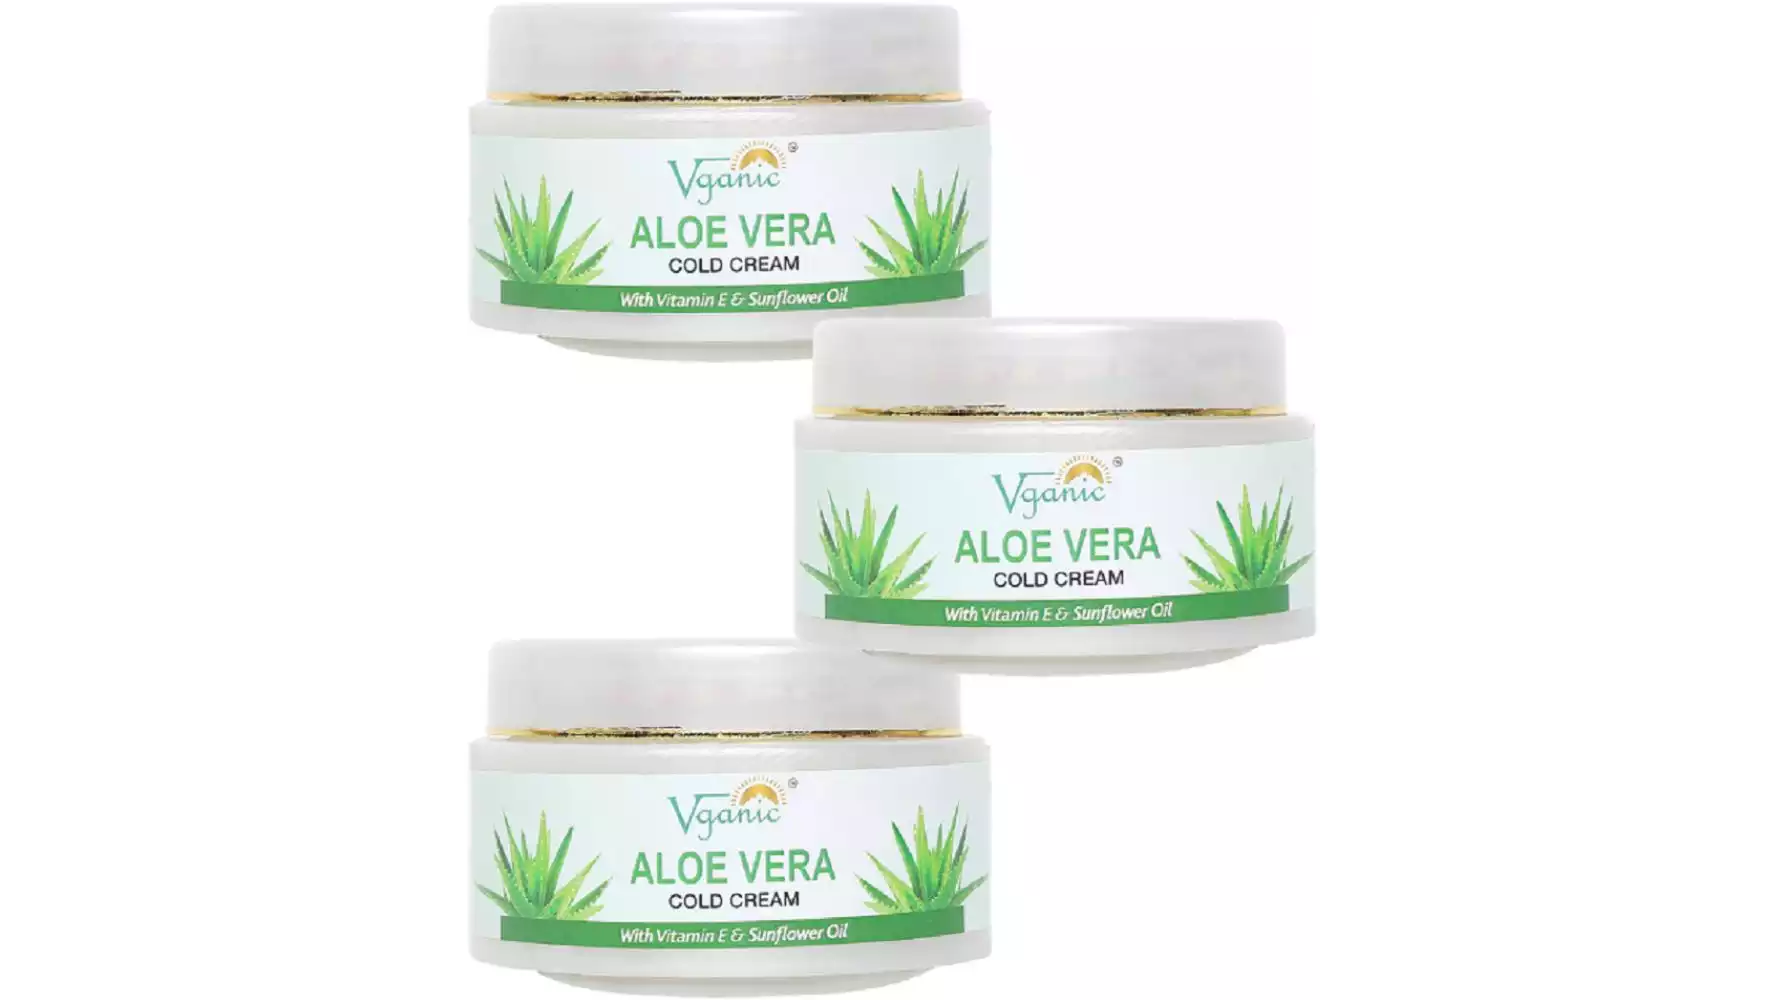 Vganic Aloe Vera Cold Cream (50g, Pack of 3)